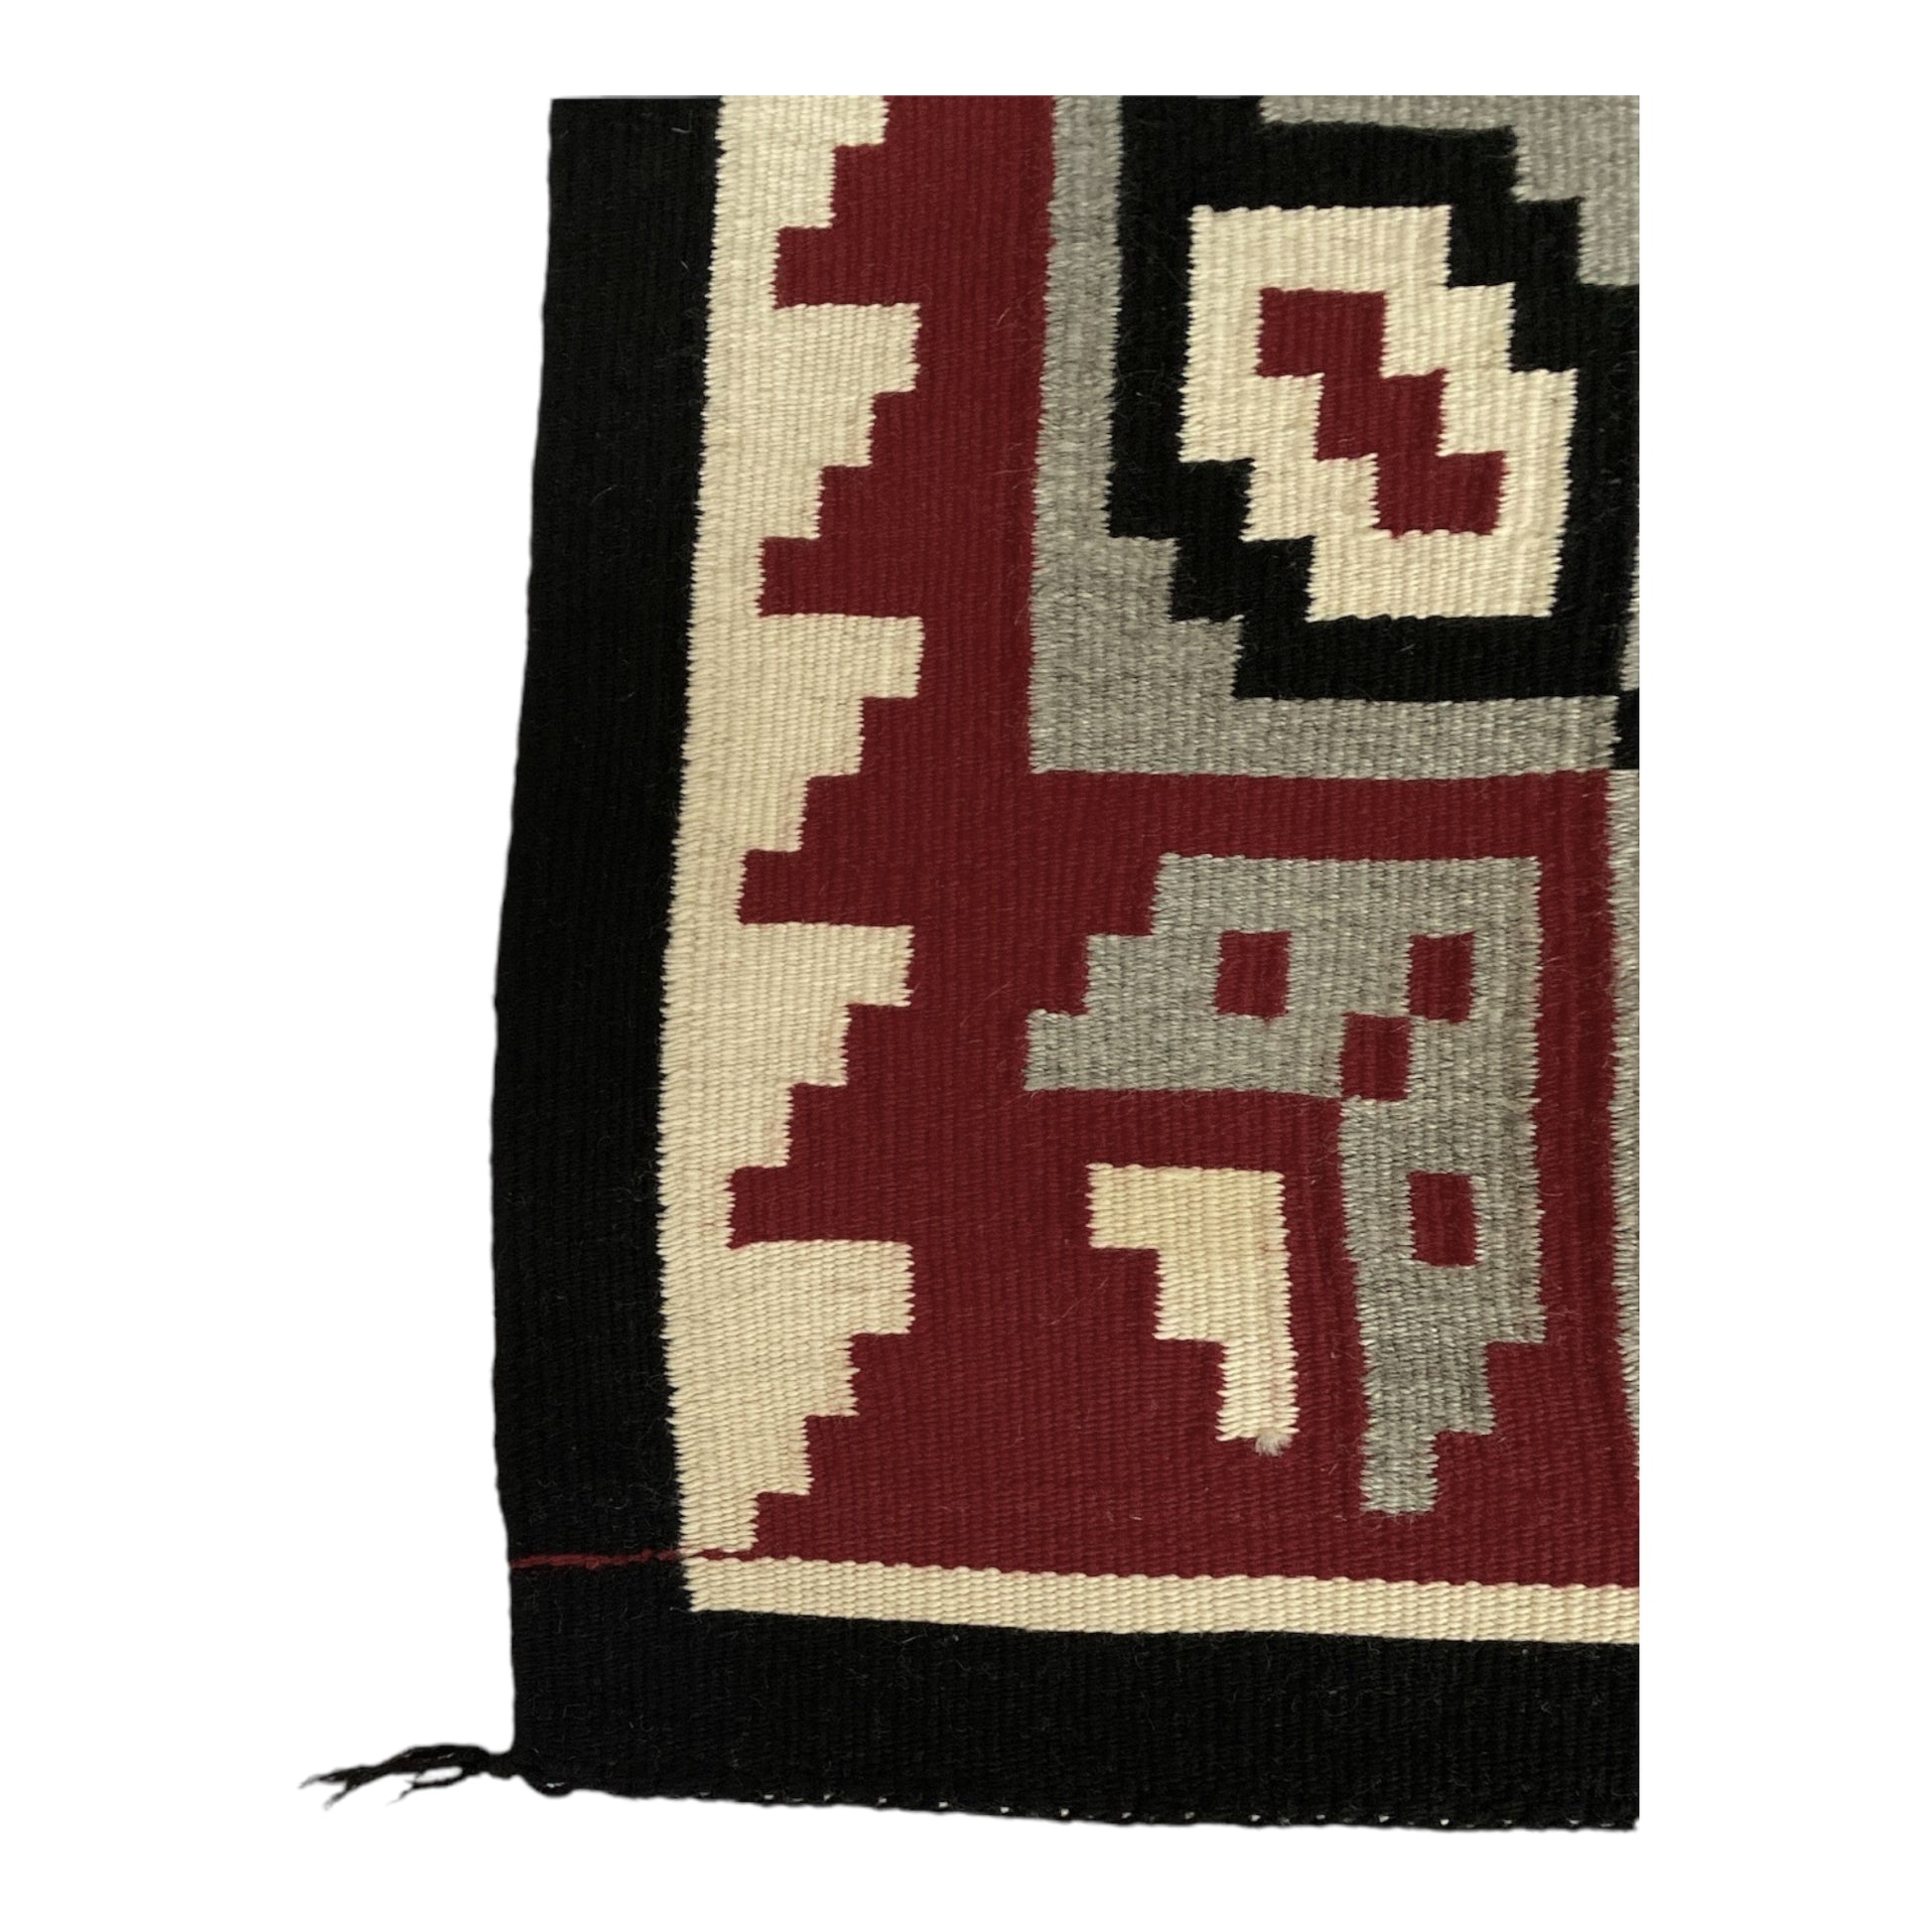 Ganado Navajo Weaving, Navajo rug for sale, authentic Navajo weaving, telluride furnishings, telluride art gallery 